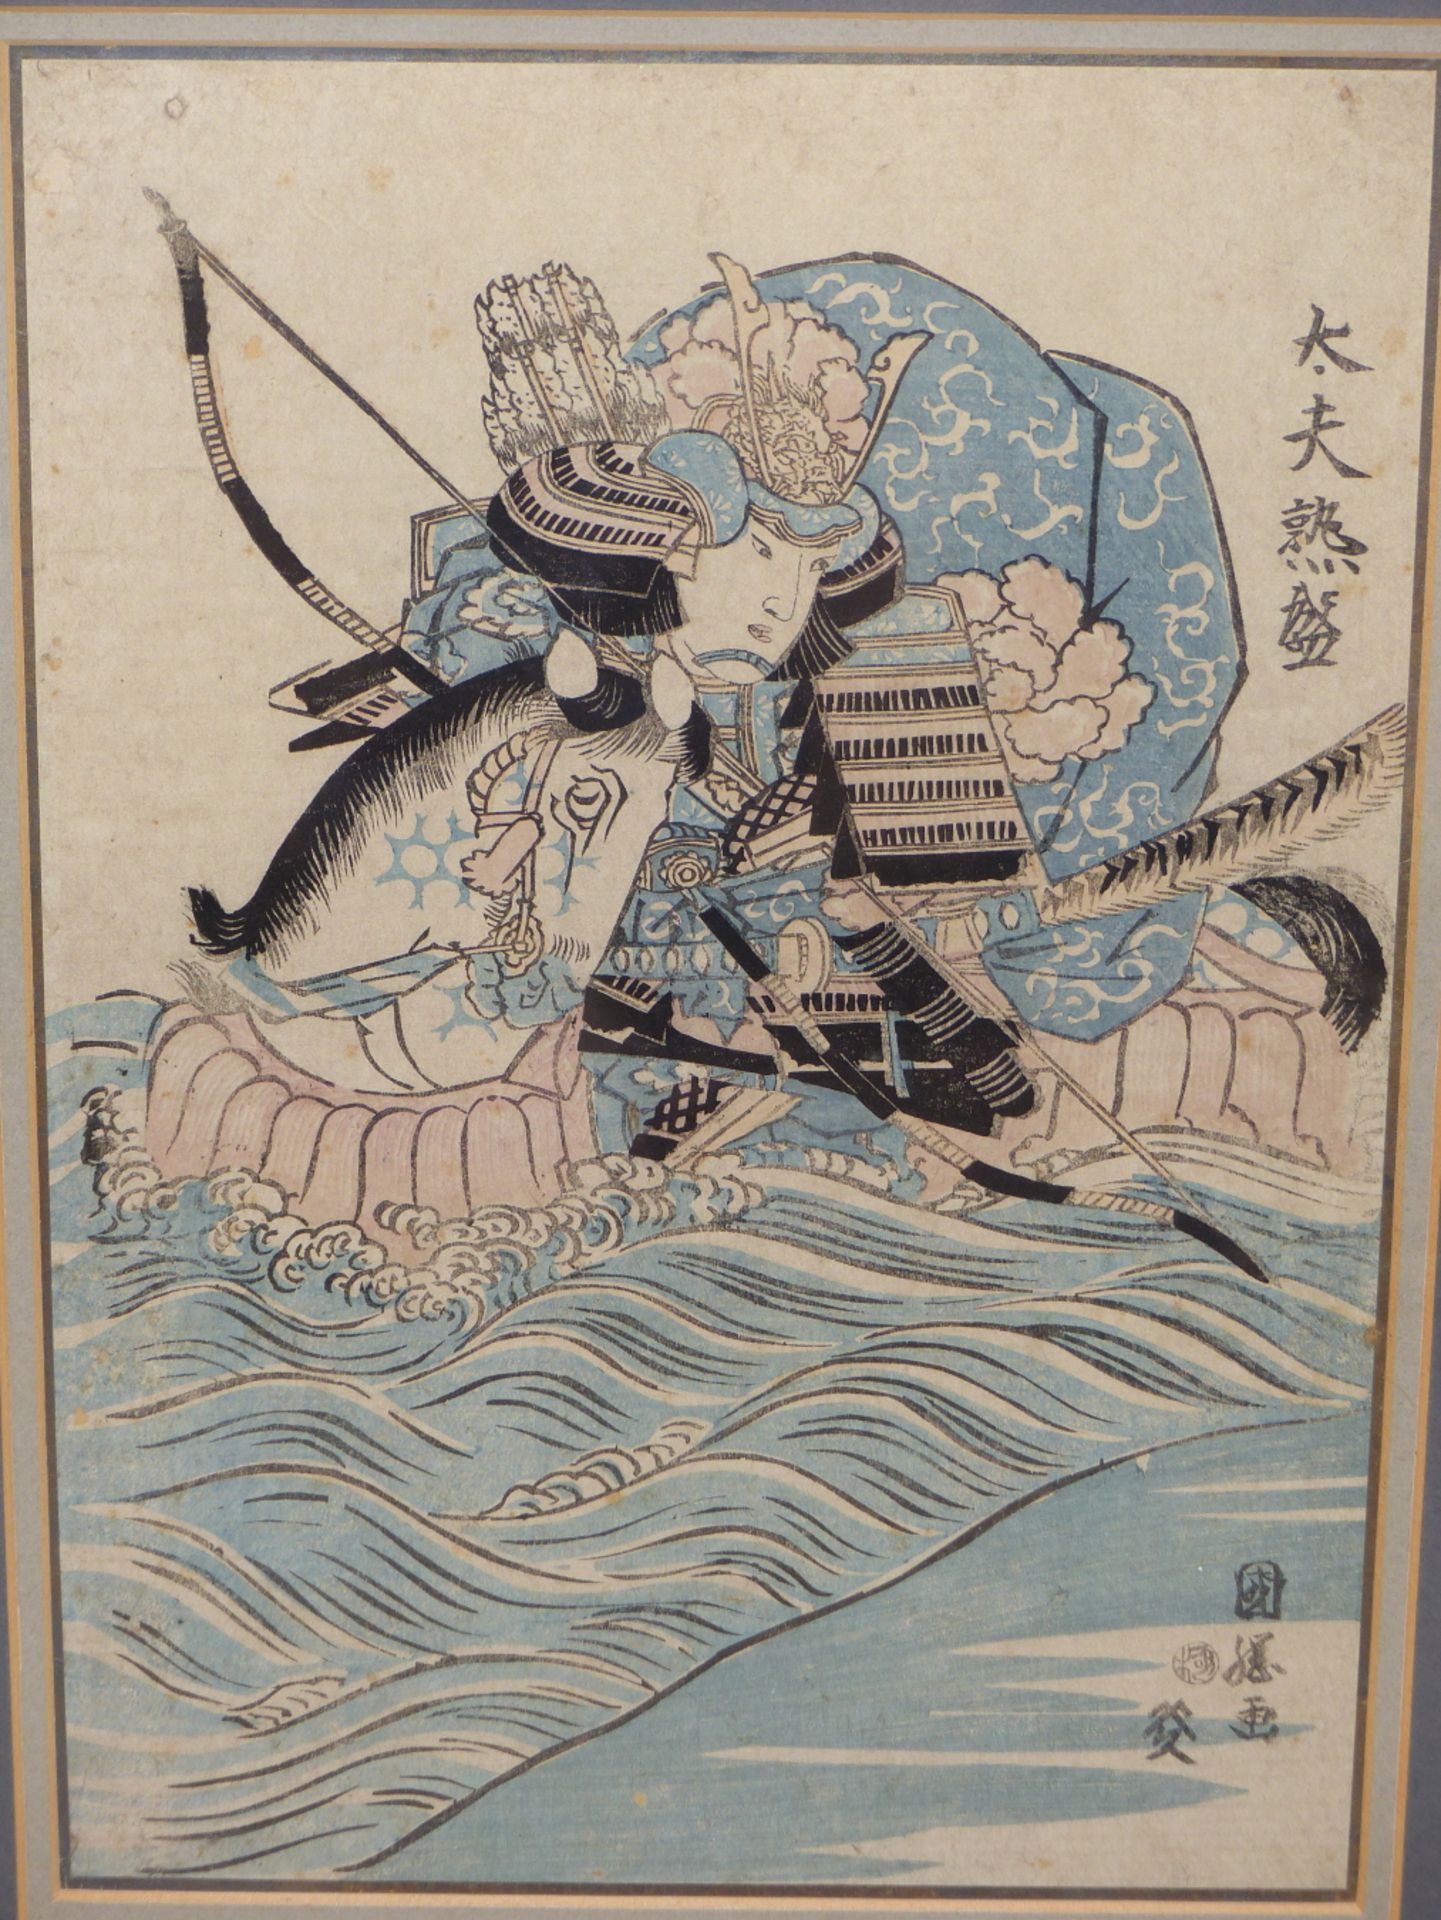 UTAGAWA KUNIKIYO, JAPANESE 1850-1887. SAMURAI IN FULL BATTLE DRESS RIDING HORSE IN THE SURF.